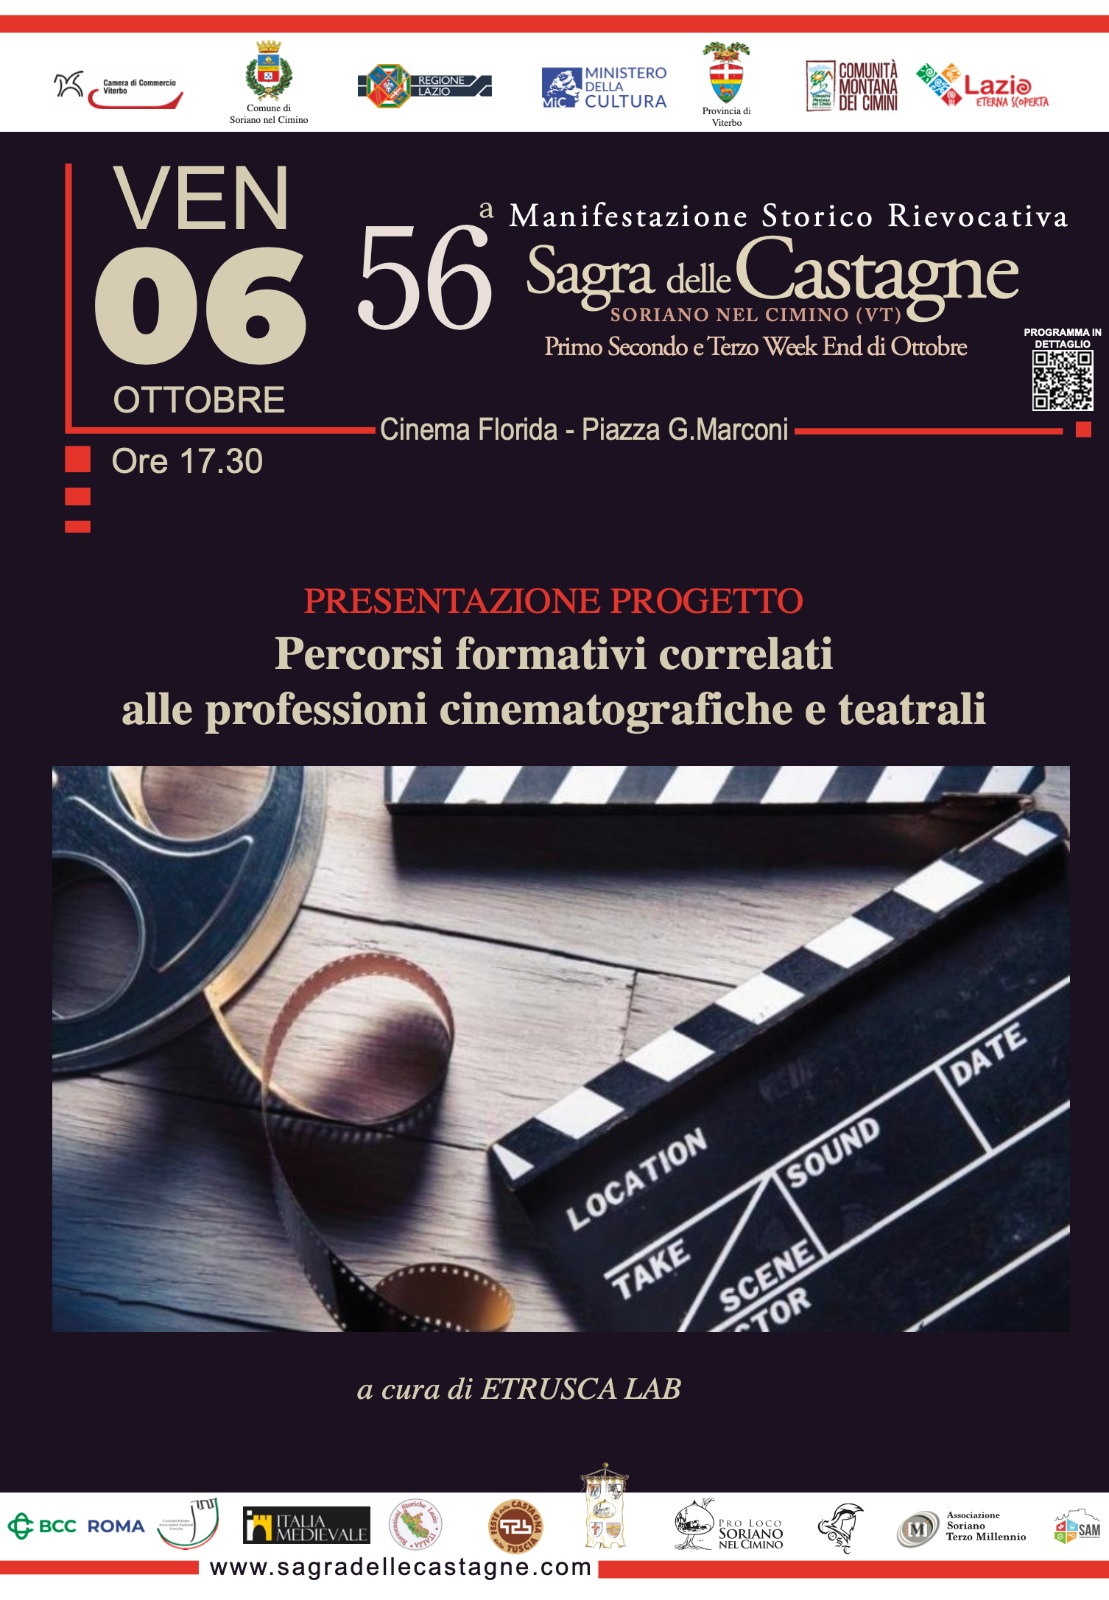 Presentazione progetto "Percorsi formativi correlati alle professioni cinematografiche e teatrali" - 56° Sagra delle Castagne